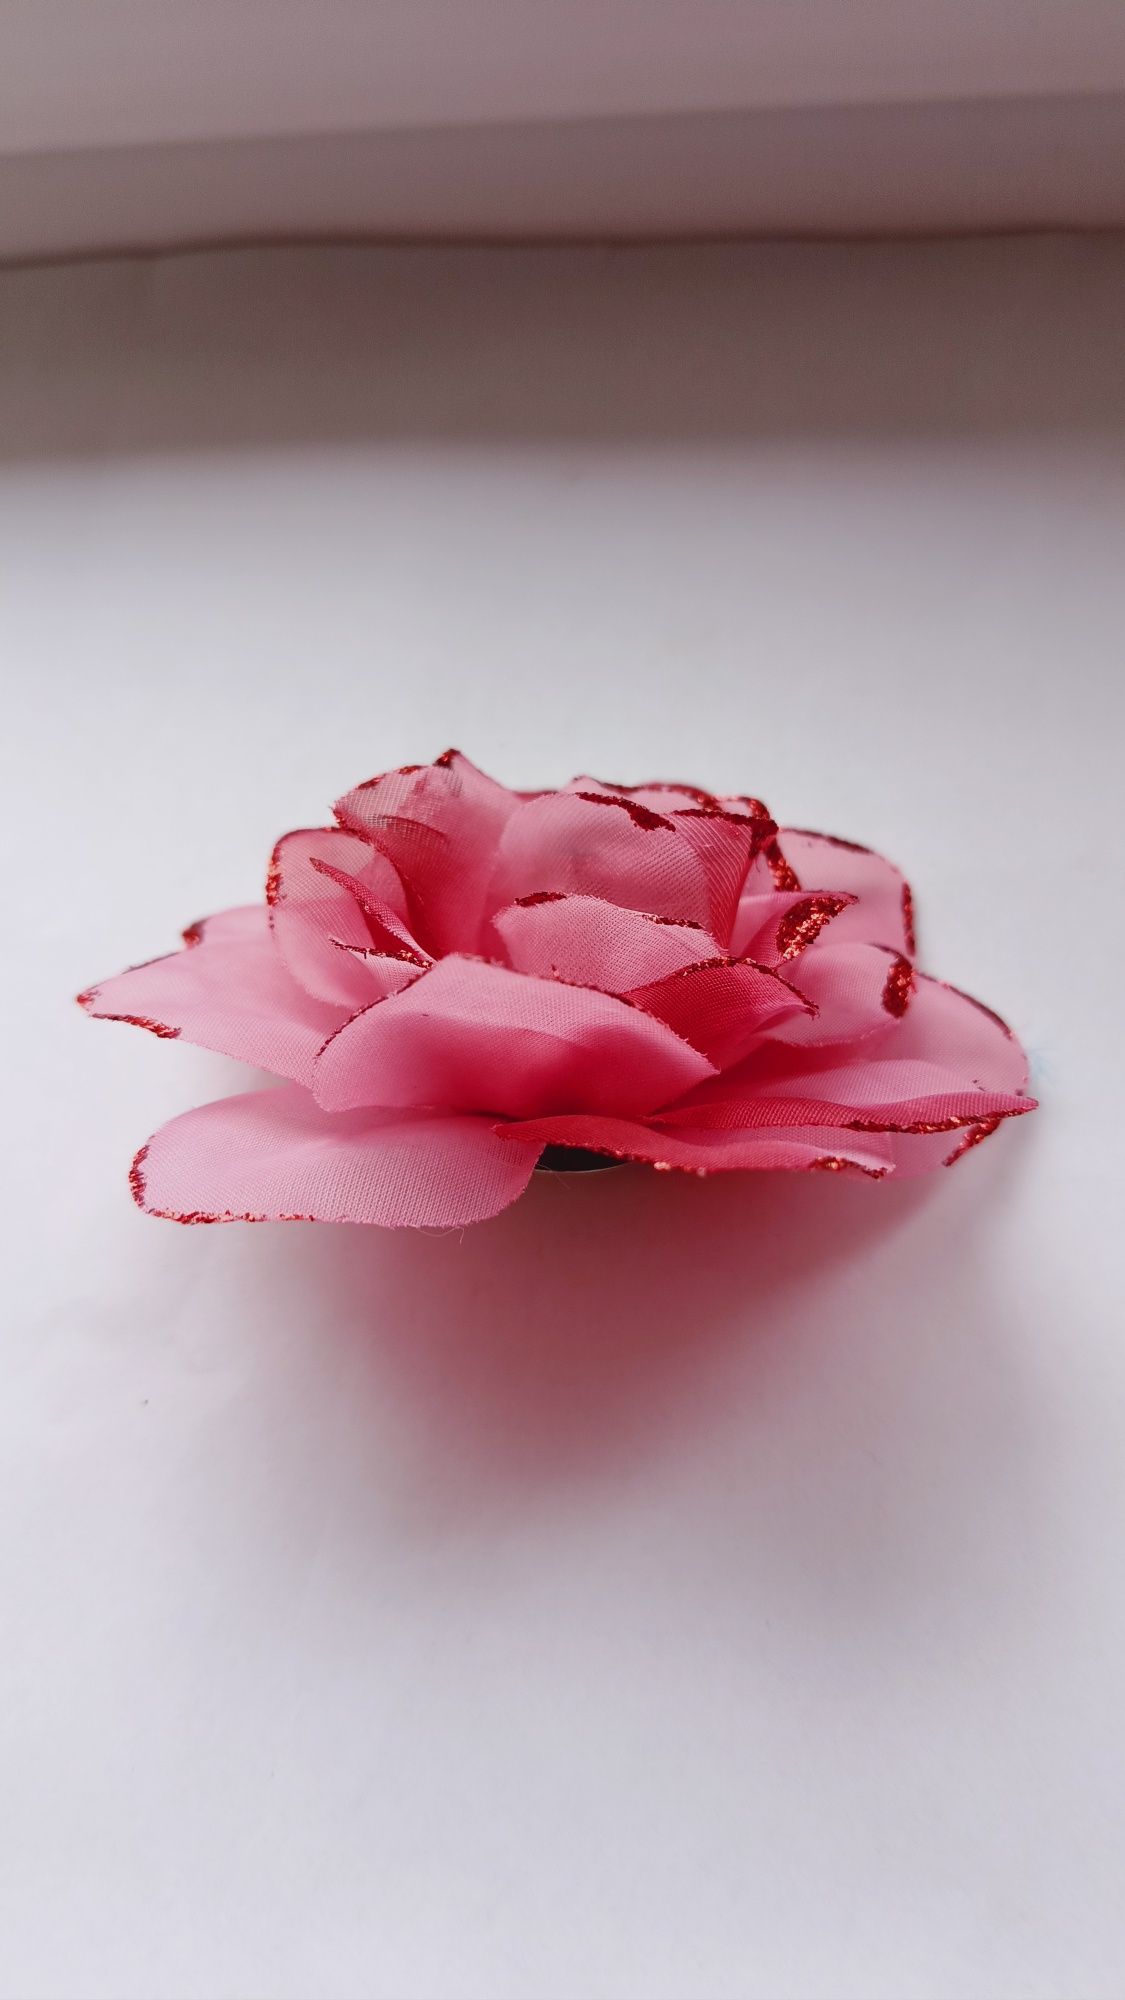 Broszka "Kwiat róży", do ubrań, włosów, średnica 10cm, stroik